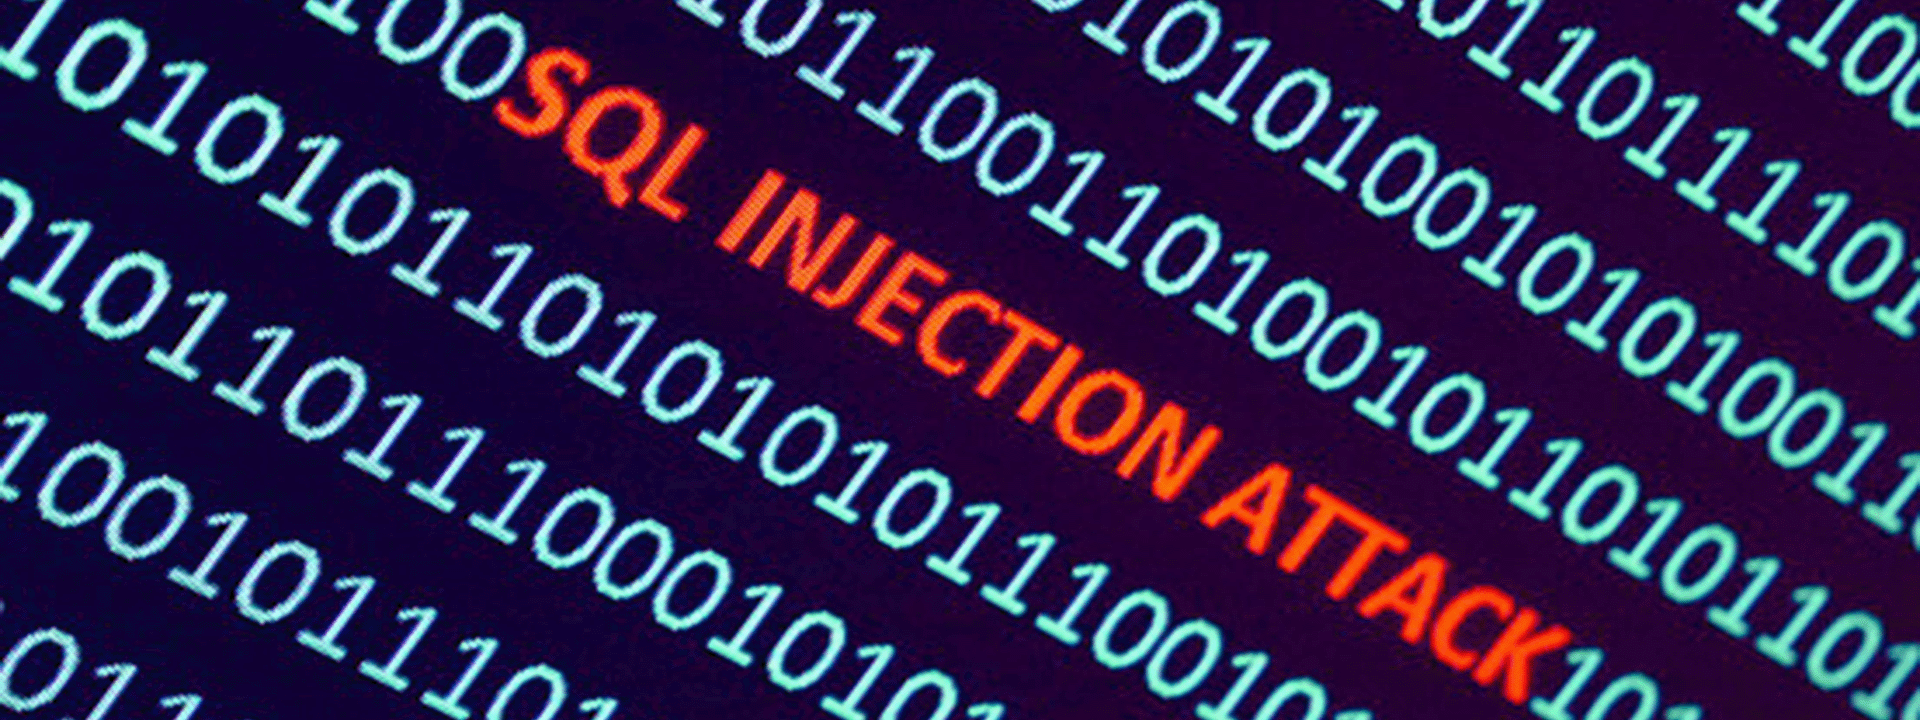 Injeção SQL: uma ciberameaça escondida nos códigos